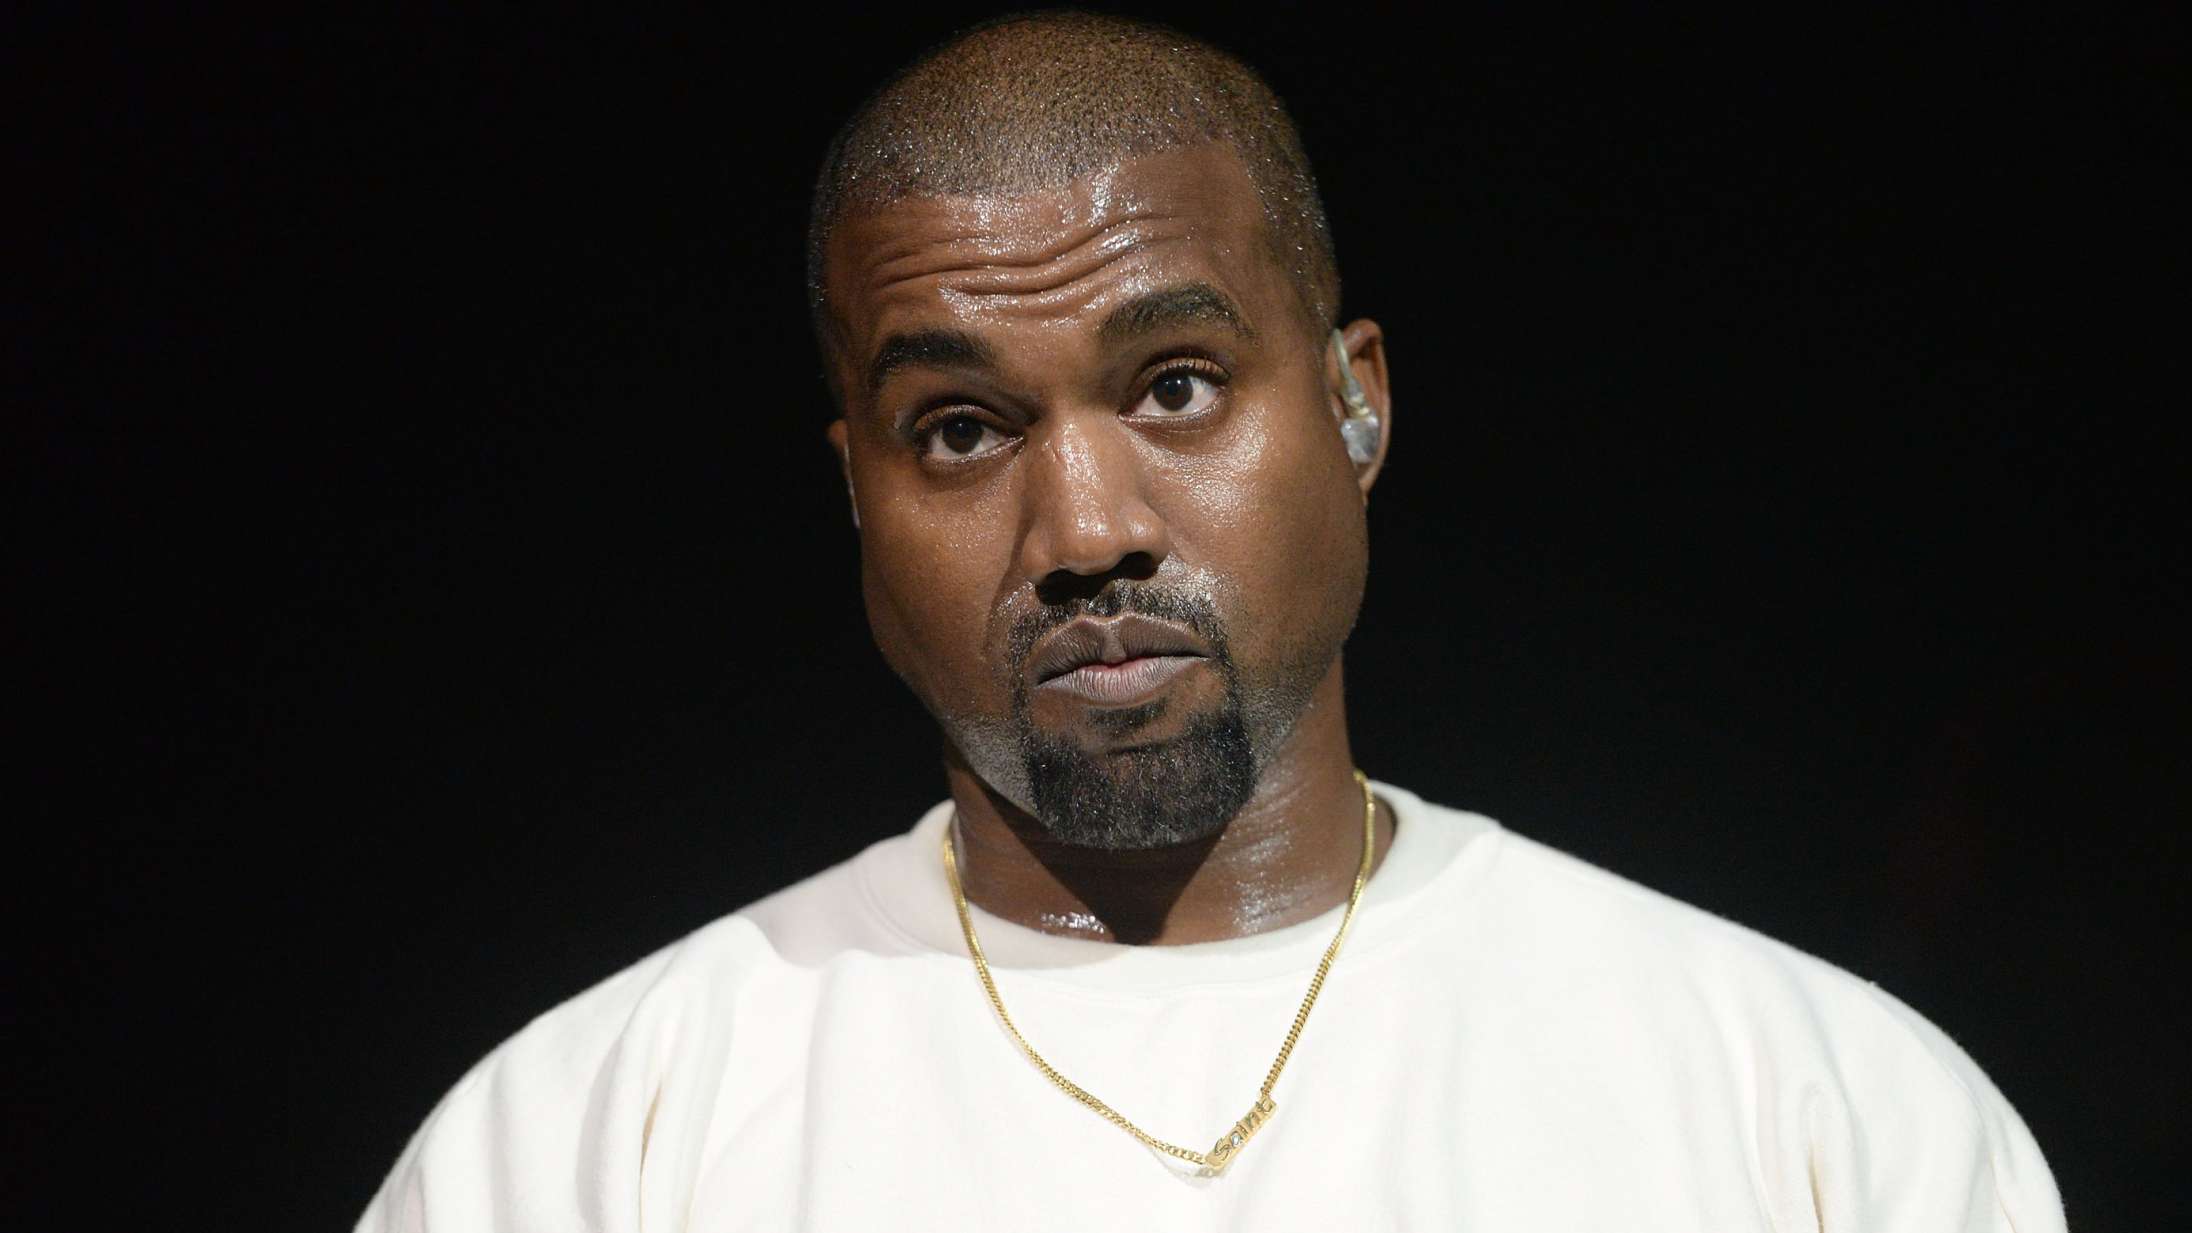 Efter kritik: Kanye West forsvarer at sælge ny Yeezy Gap-kollektion i sorte (skralde)sække